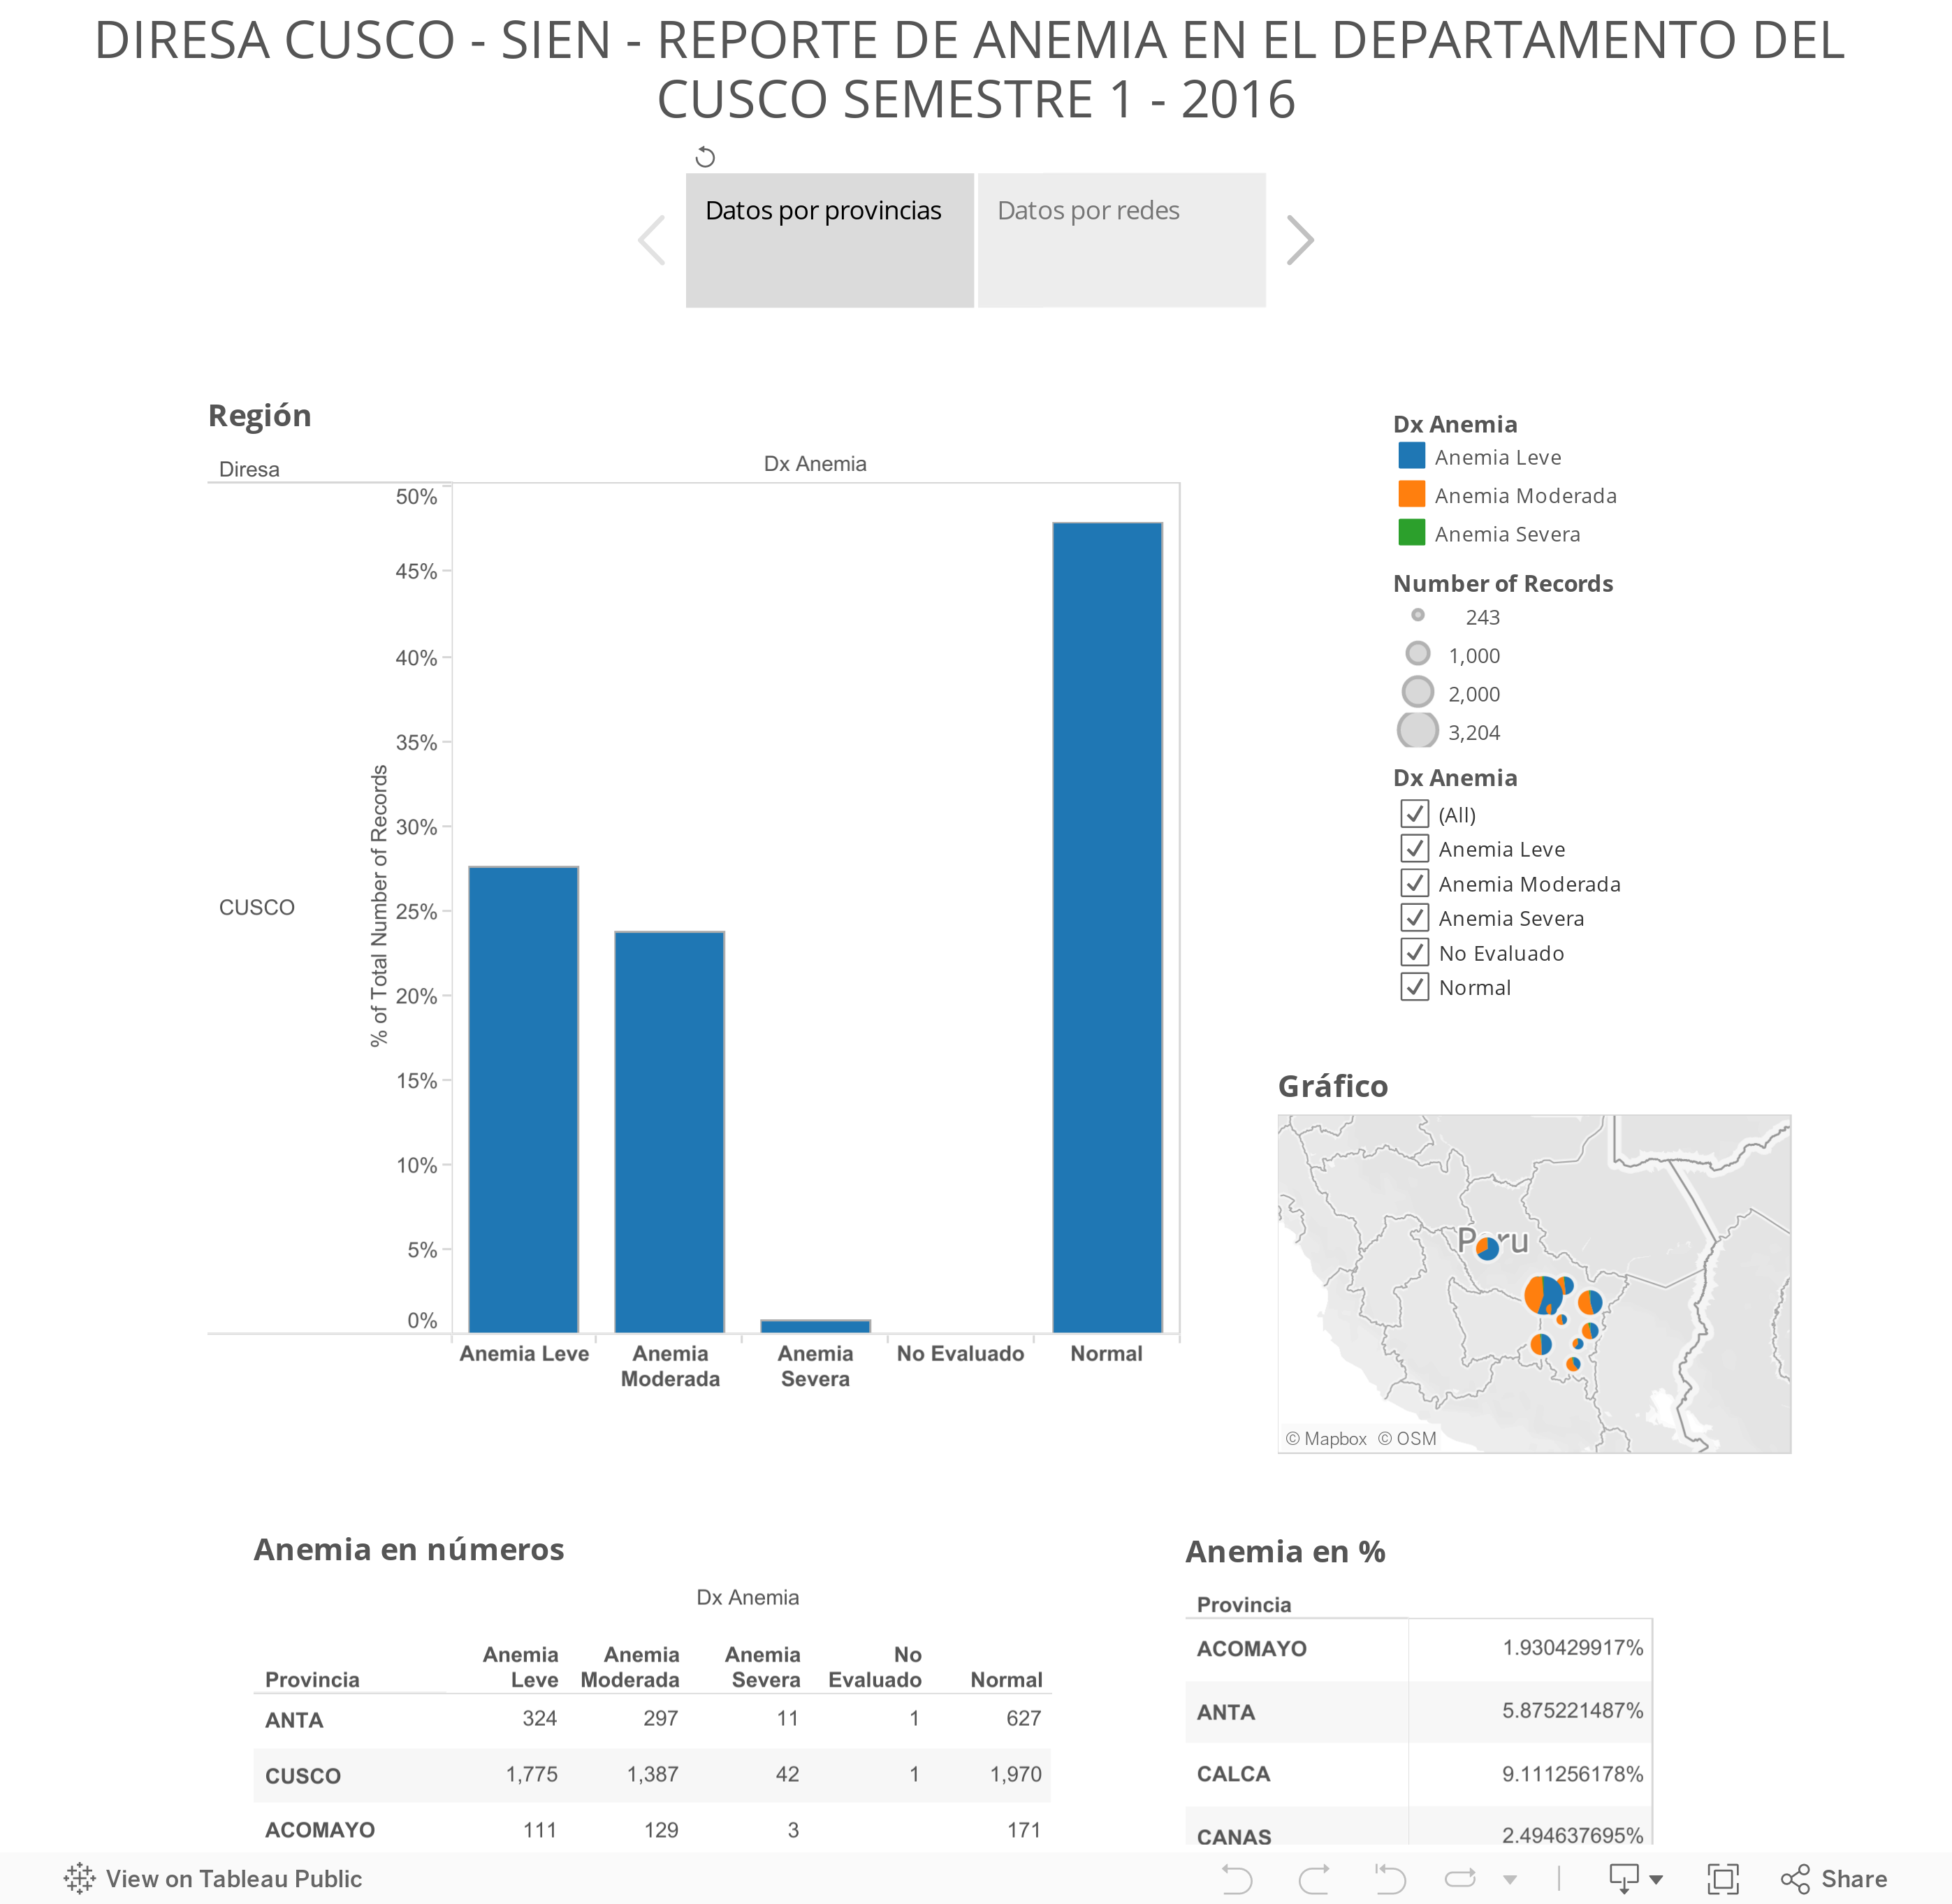 DIRESA CUSCO - SIEN - REPORTE DE ANEMIA EN EL DEPARTAMENTO DEL CUSCO SEMESTRE 1 - 2016 